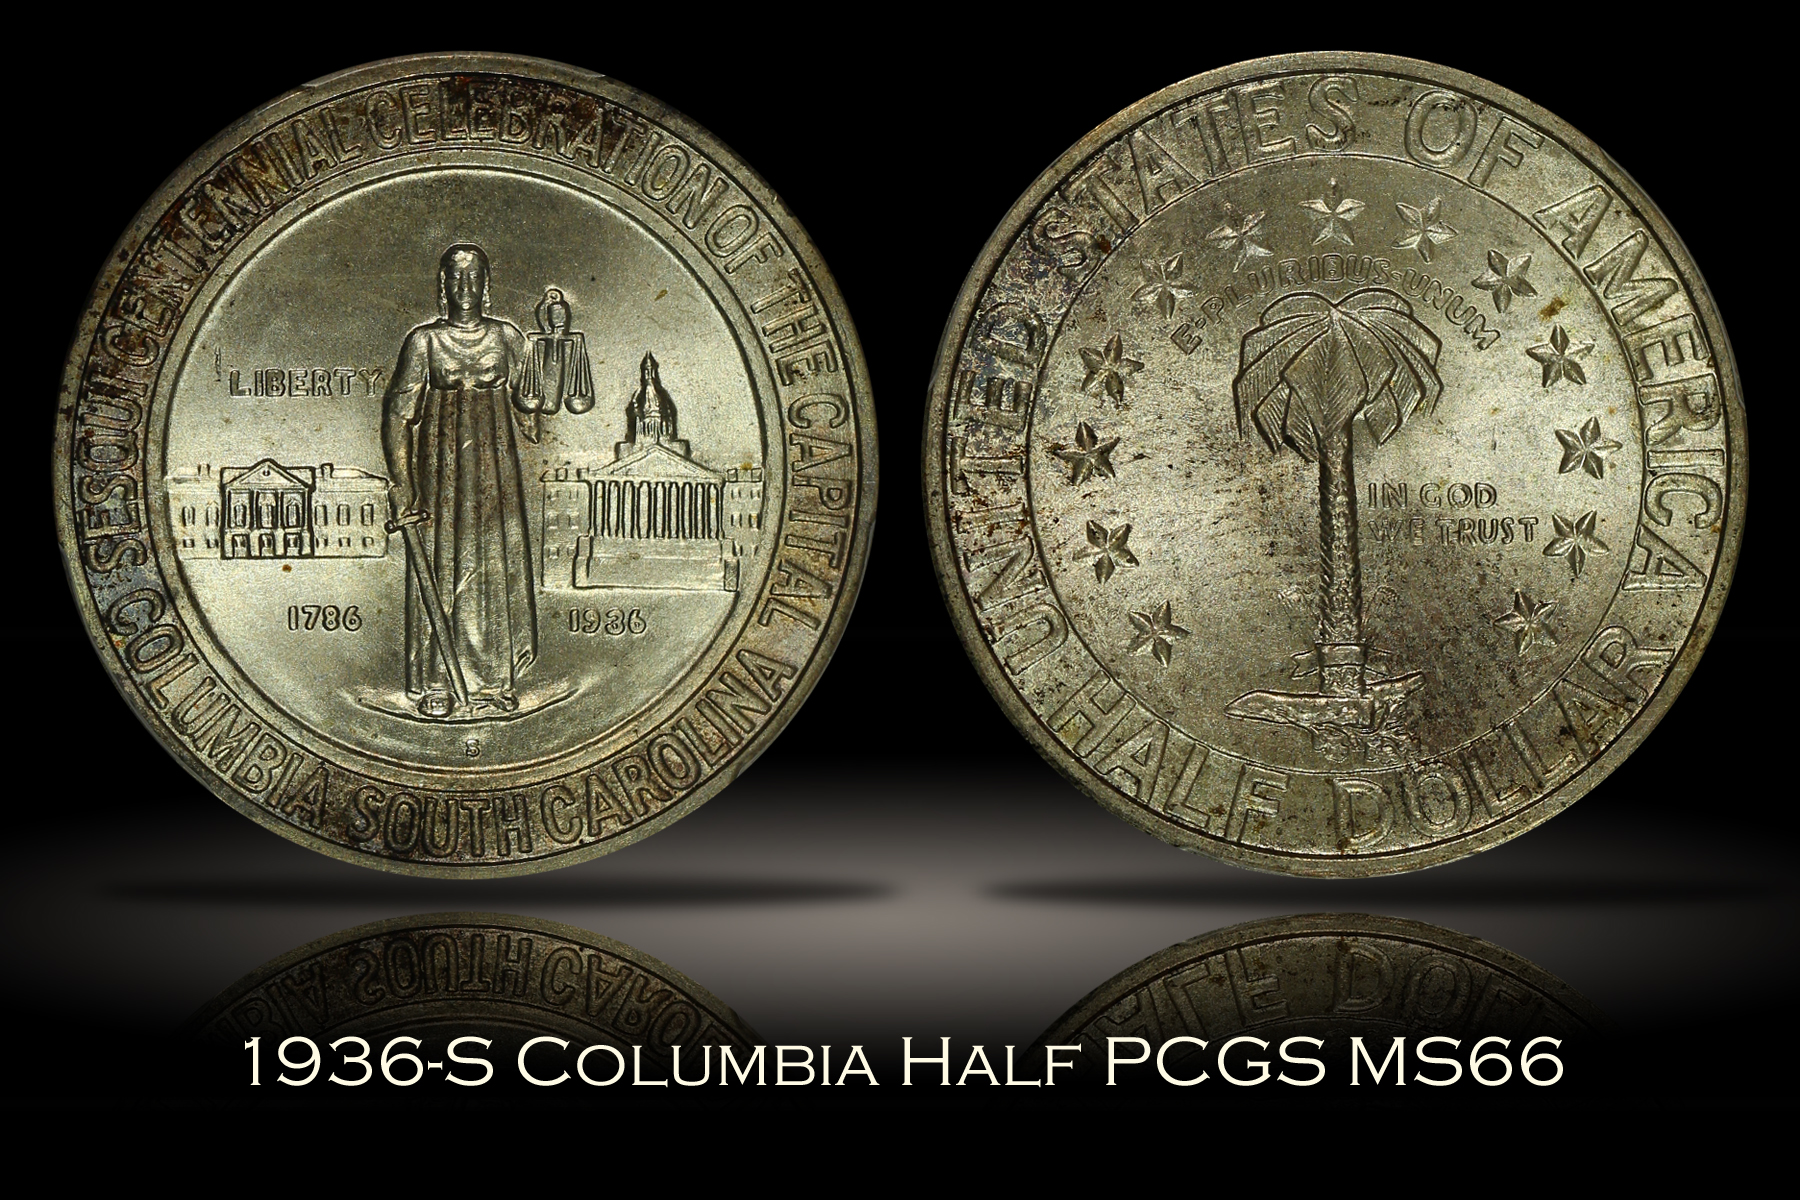 1936-S Columbia Half PCGS MS66